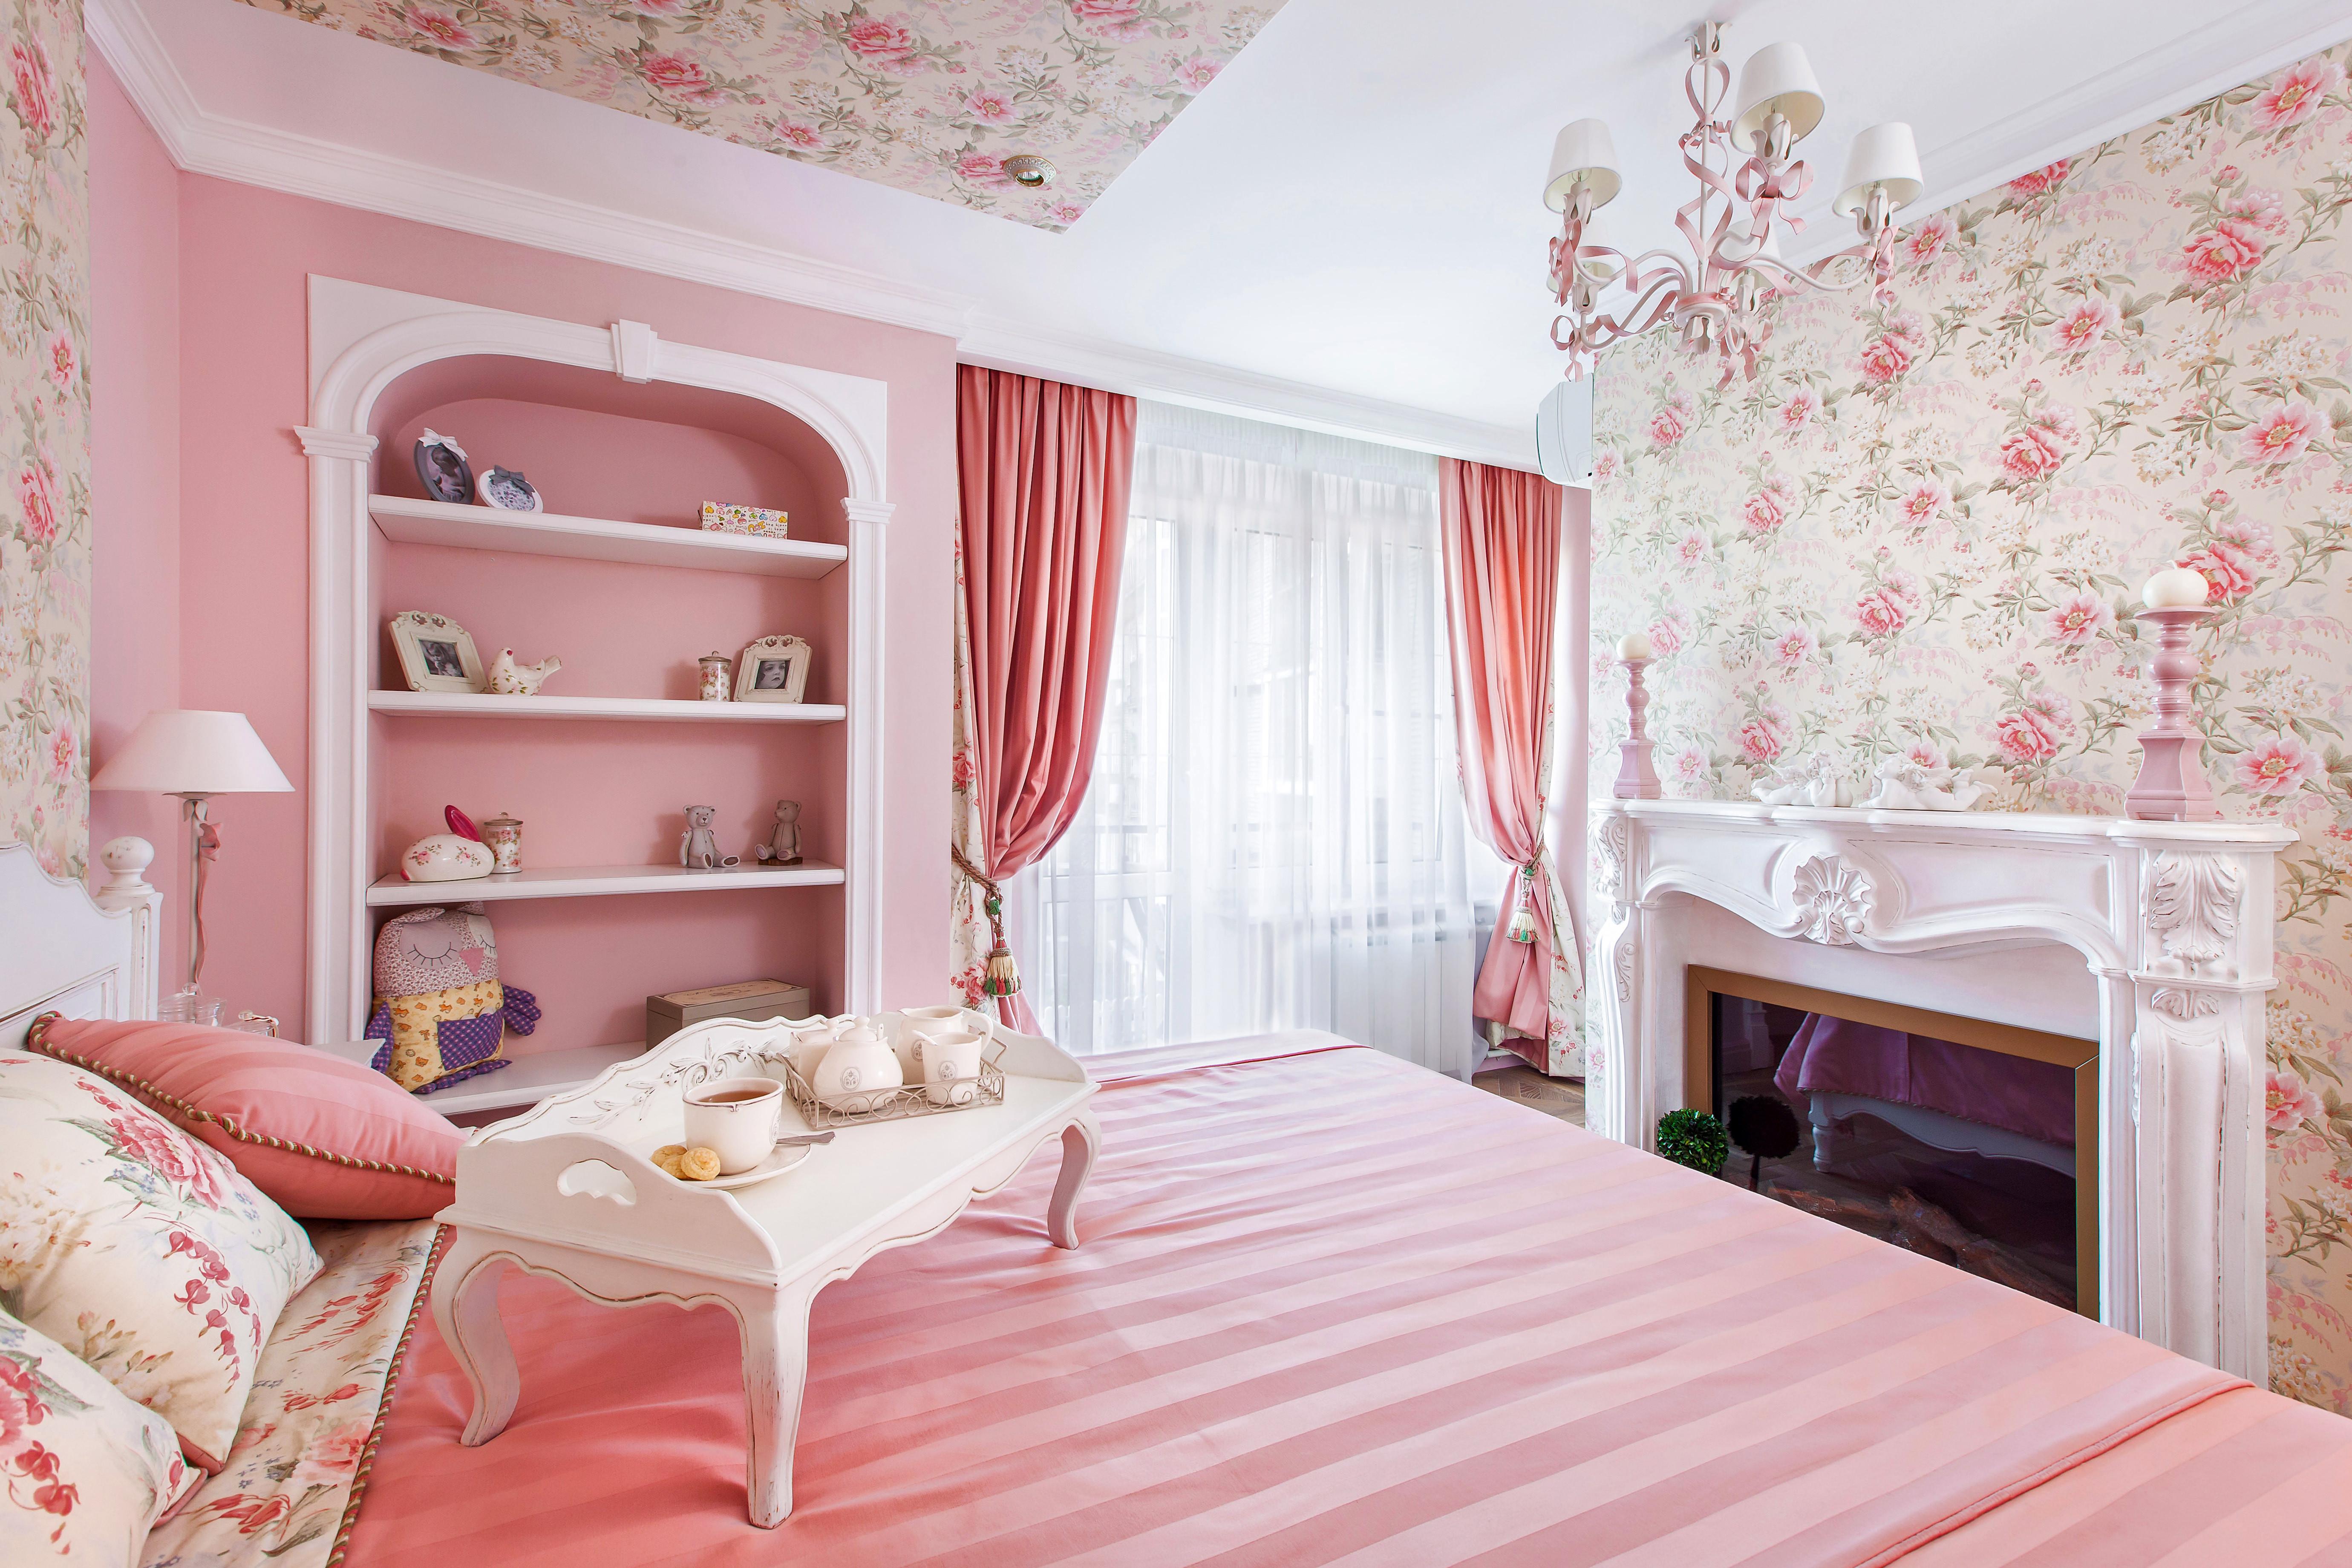 Комната в розовых тонах. Спальня в розовом цвете. Спальня в розовом стиле. Спальня в розовых тонах. Розовый интерьер.